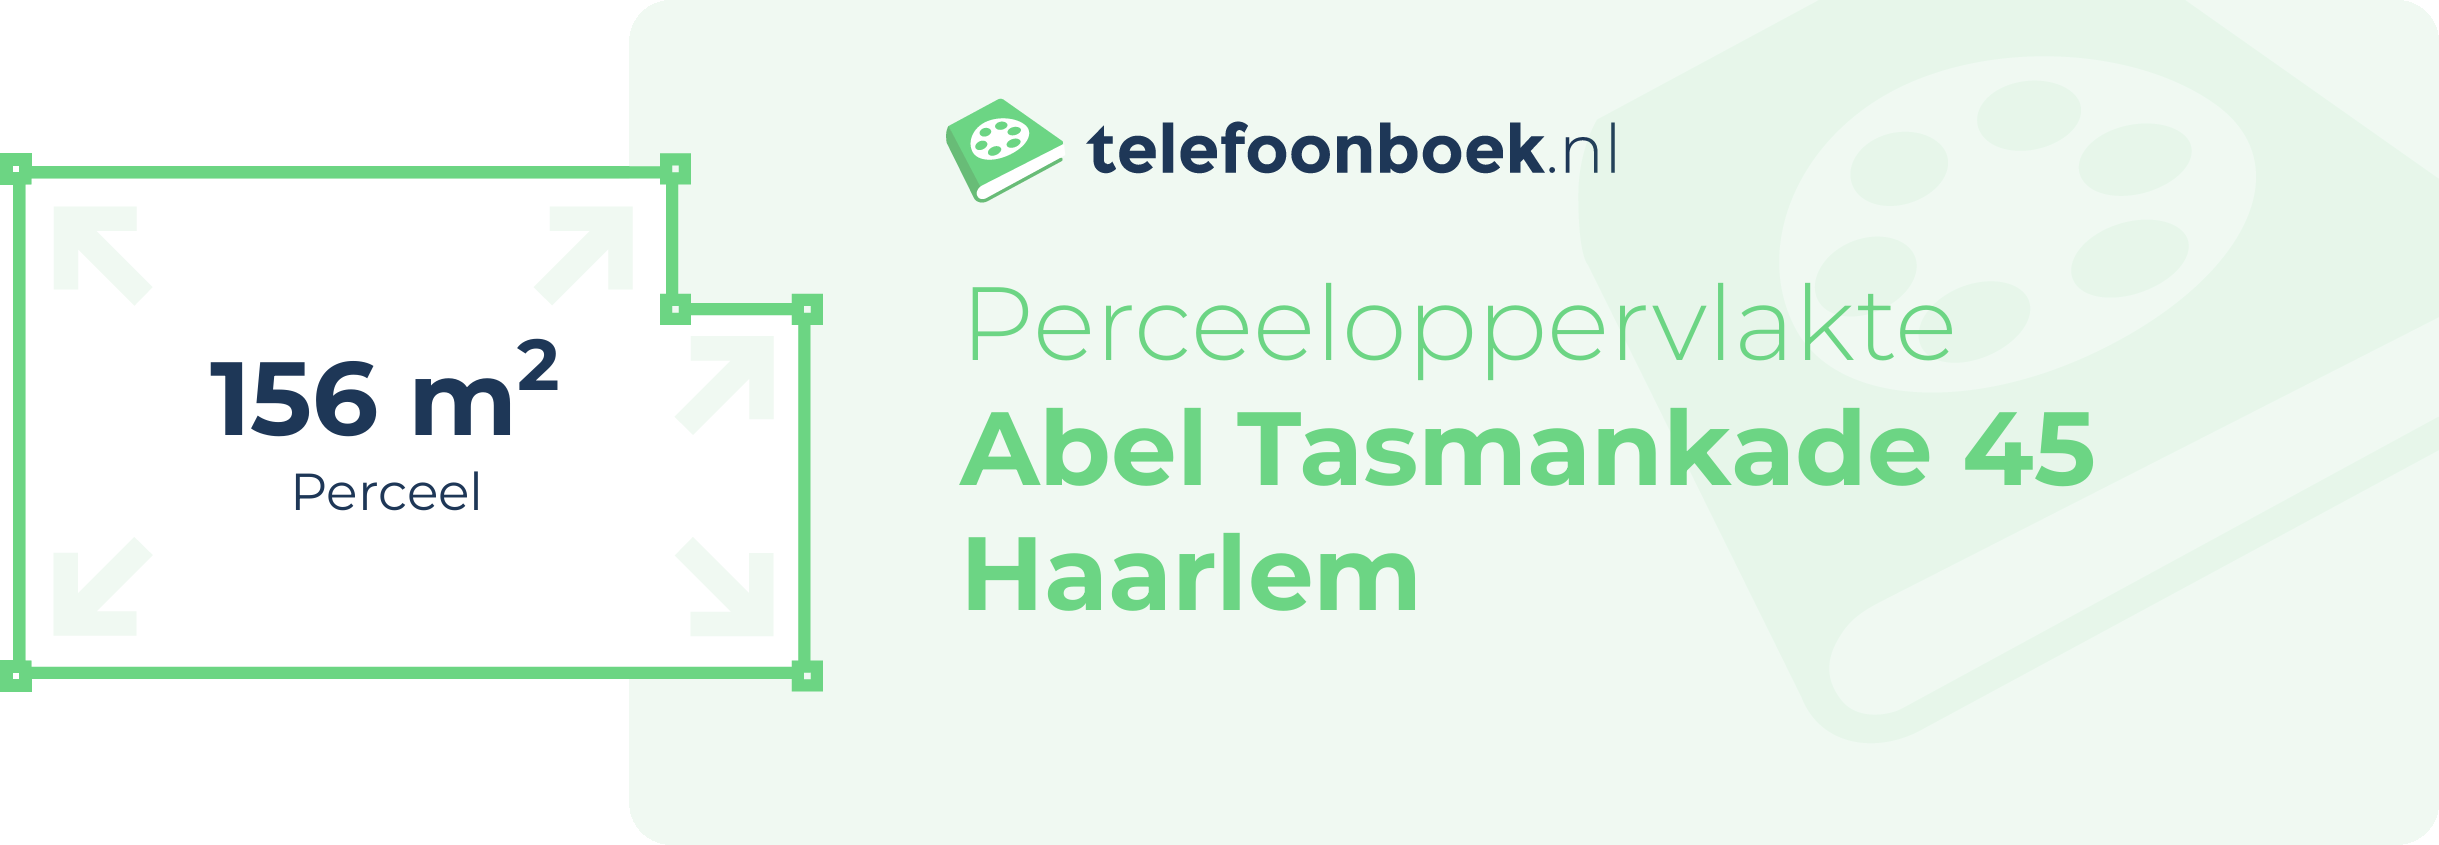 Perceeloppervlakte Abel Tasmankade 45 Haarlem